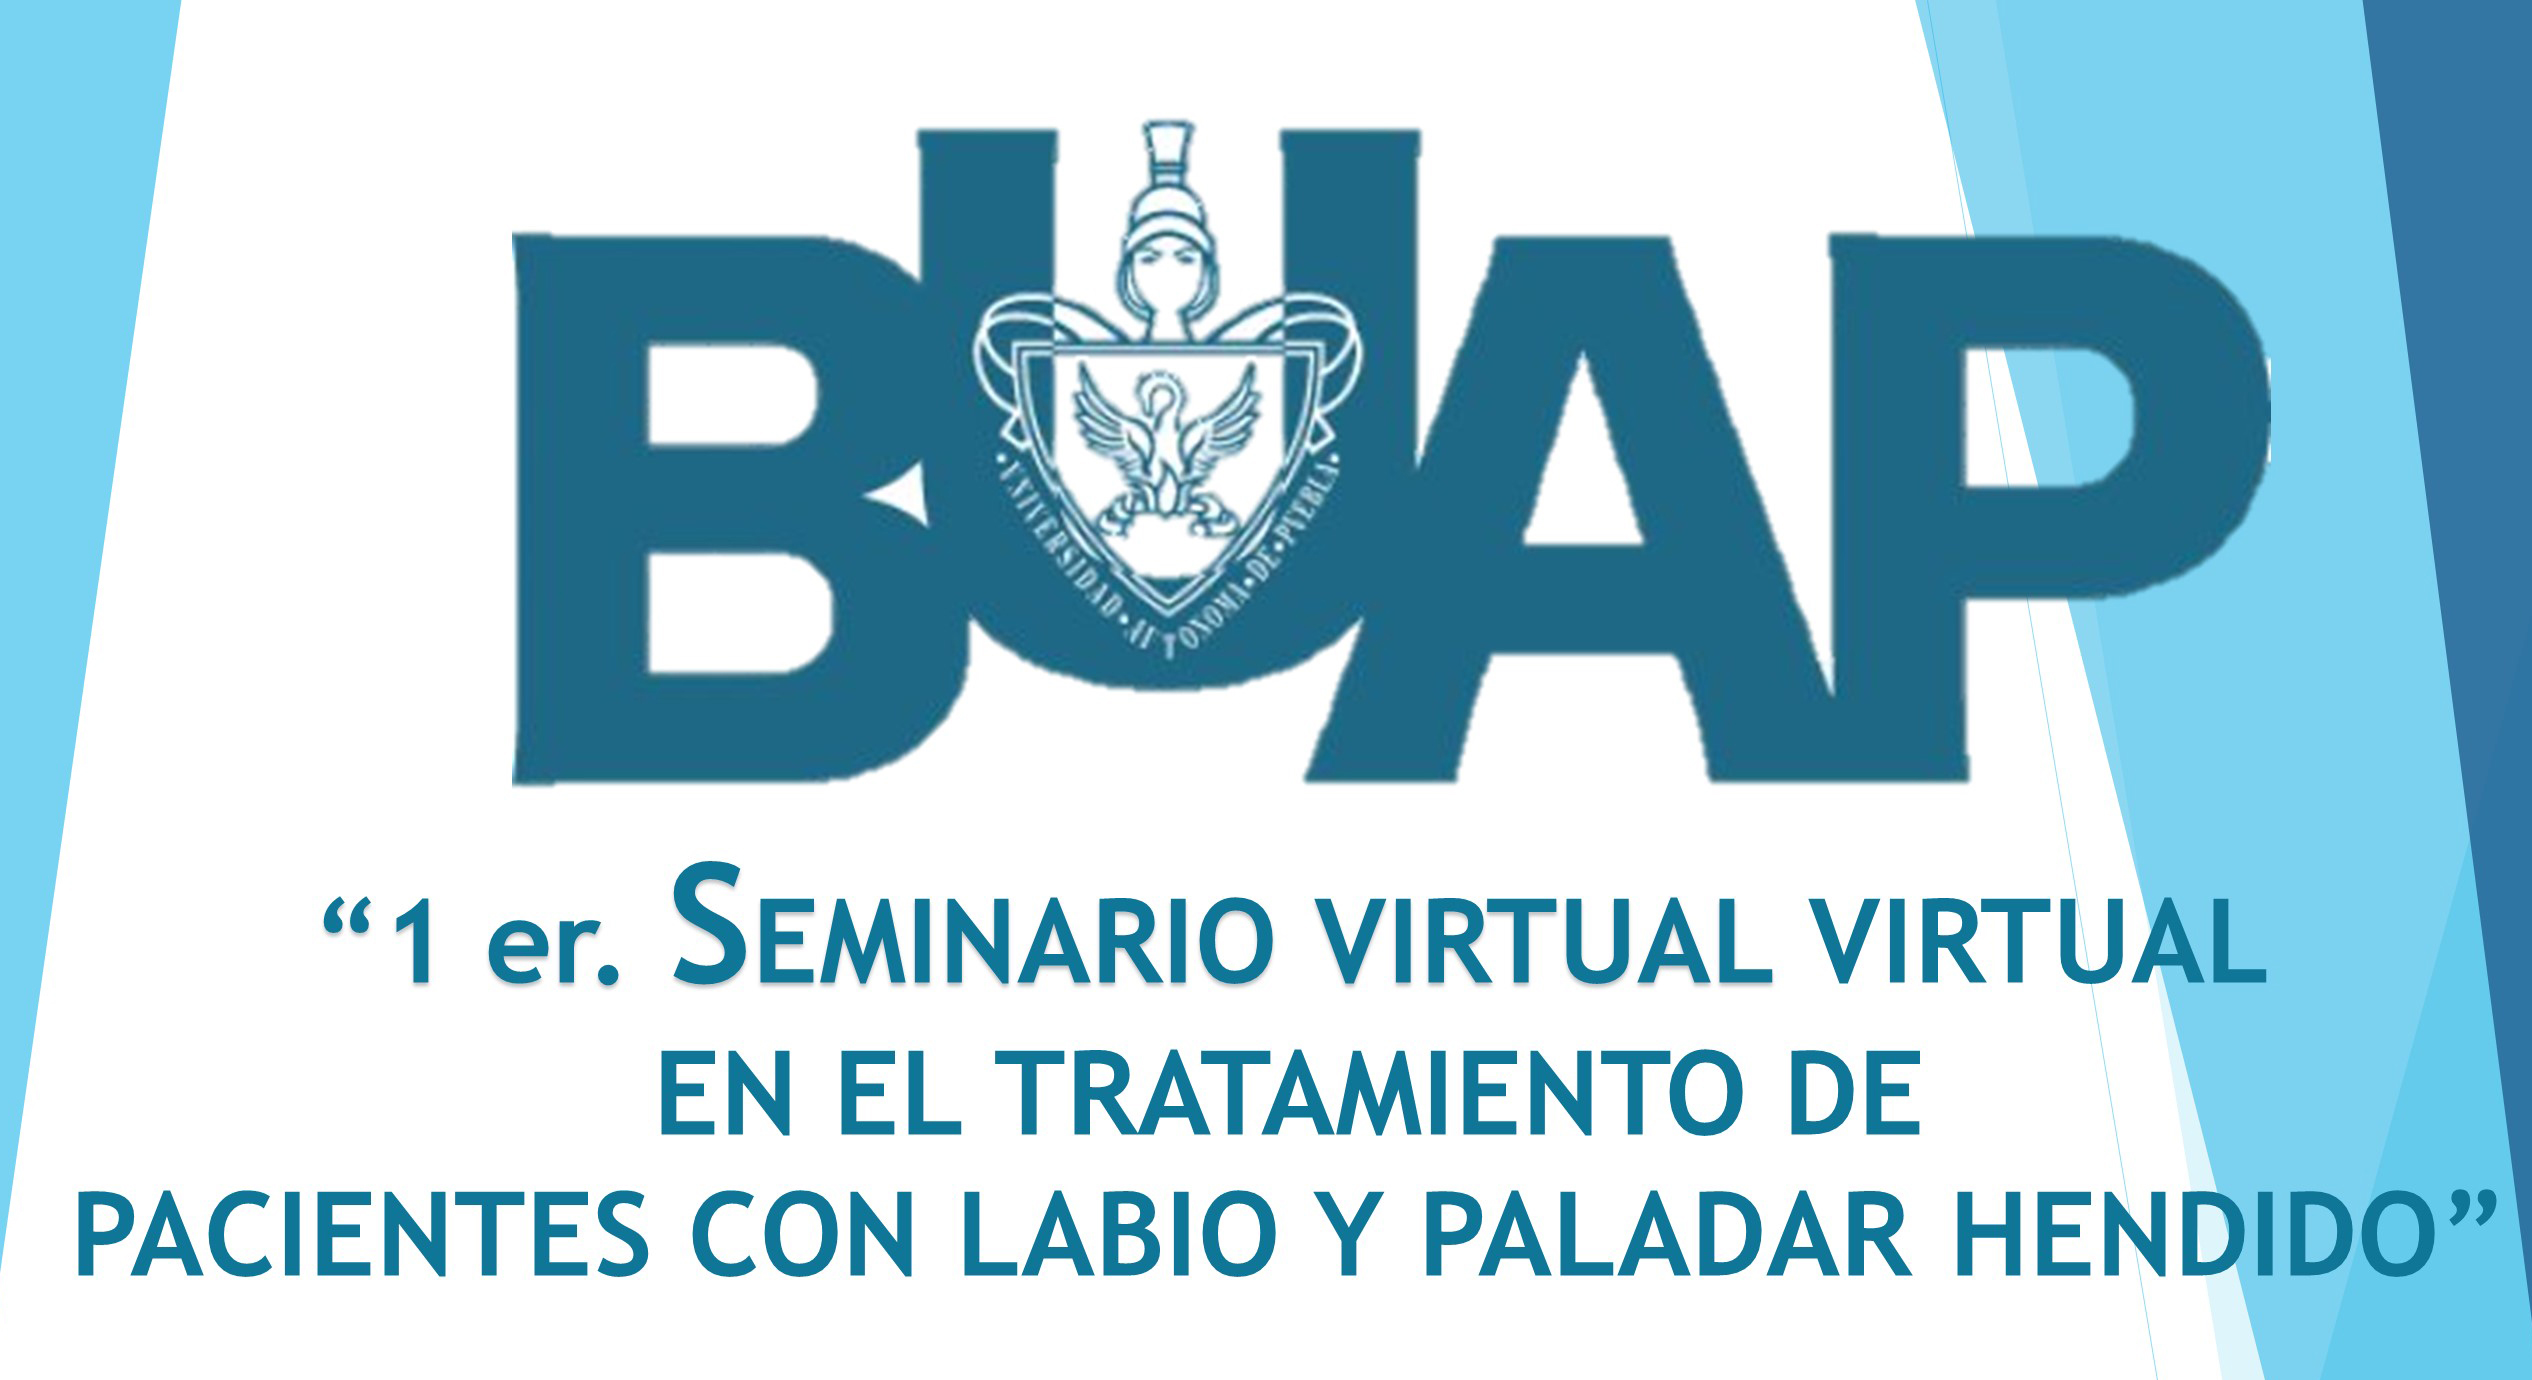 1er. Seminario virtual en el tratamiiento de pacientes con labio y paladar hendido 2021